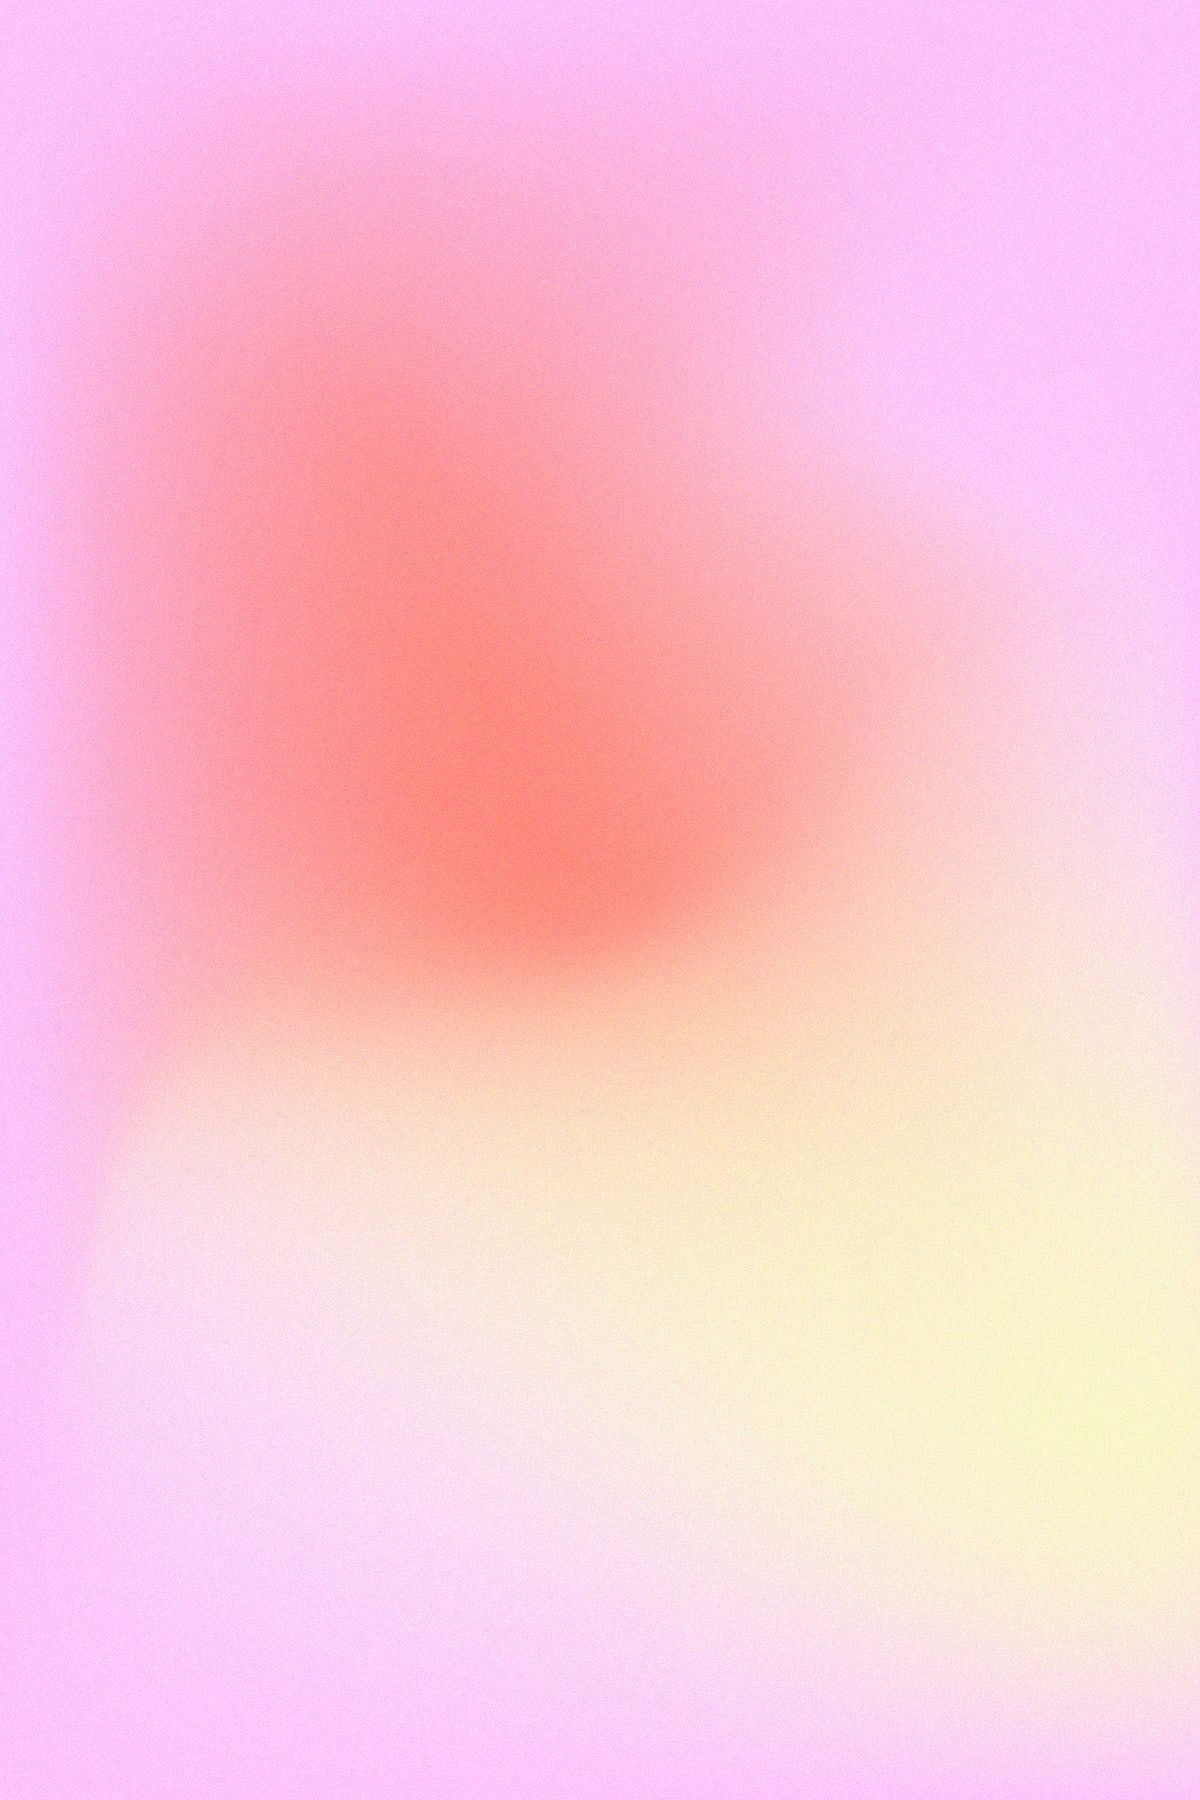  Farbverlauf Hintergrundbild 1200x1800. Pastel gradient blur vector background. free image / nunny. Pastel background, Pastel gradient, iPhone wallpaper for phone